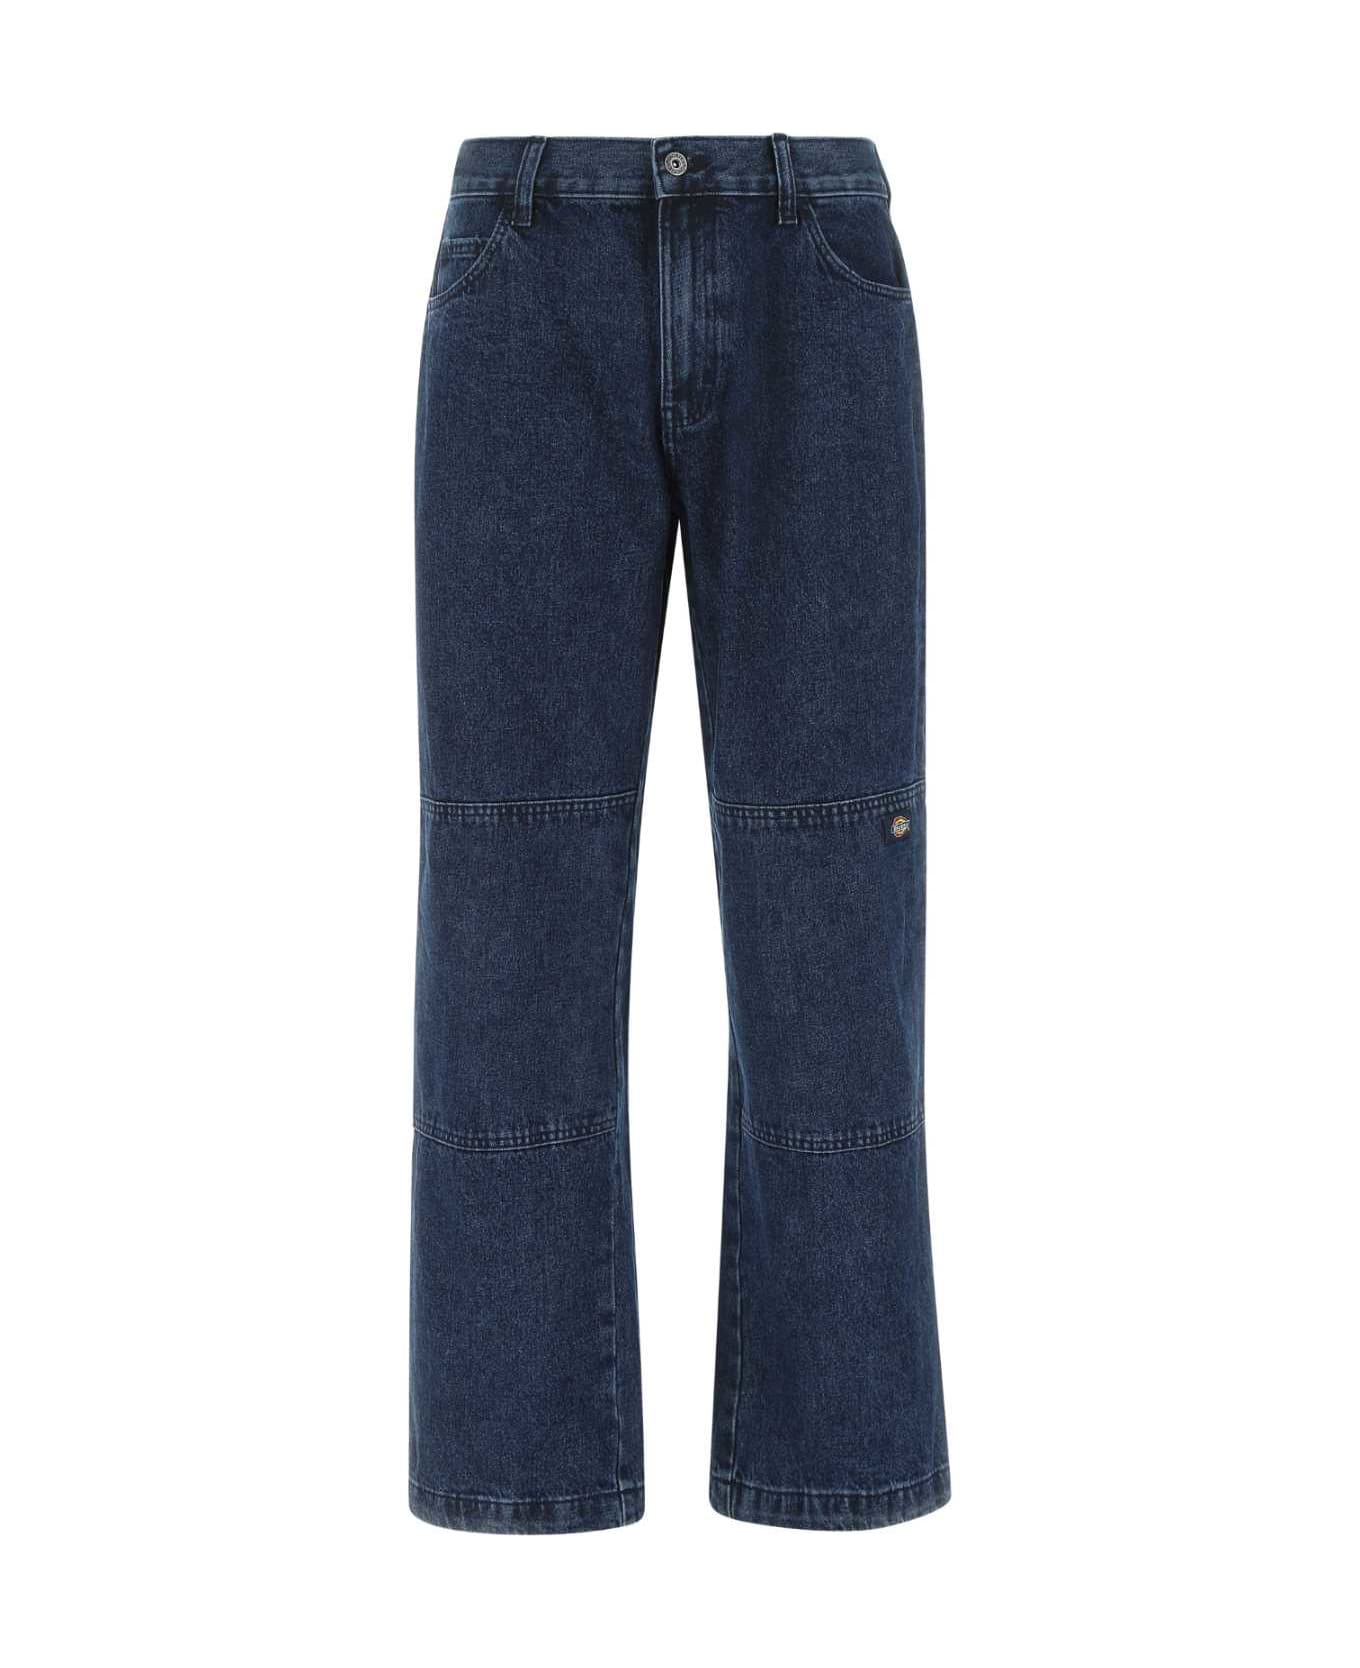 Dickies Blue Denim Jeans - IND1